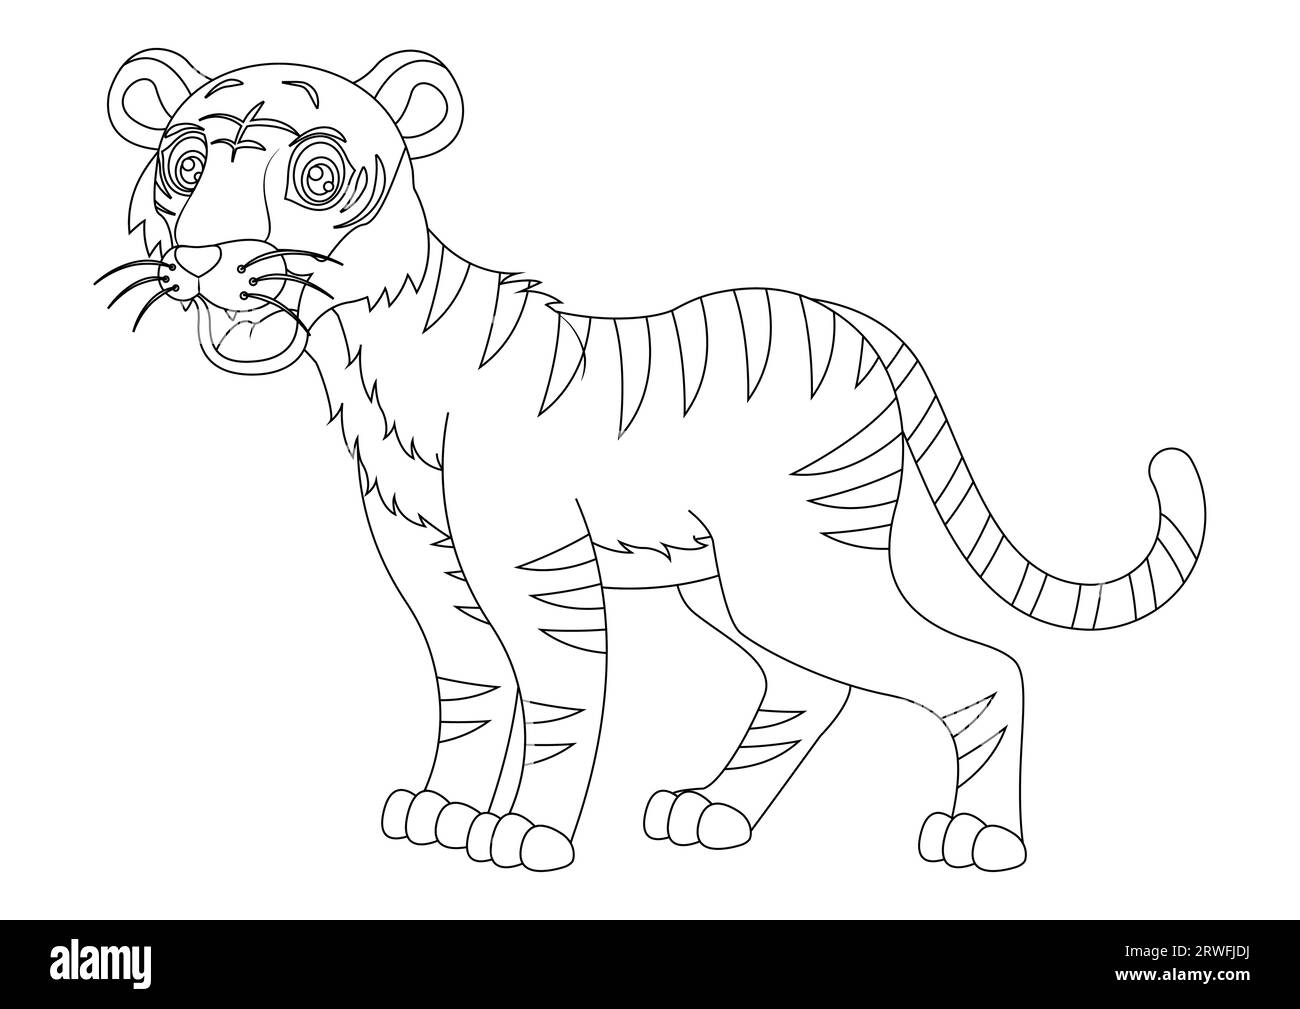 Schwarz-weiße Tiger-Zeichentrickfigur Vektor-Illustration. Malseite des ZeichentrickTigers Stock Vektor